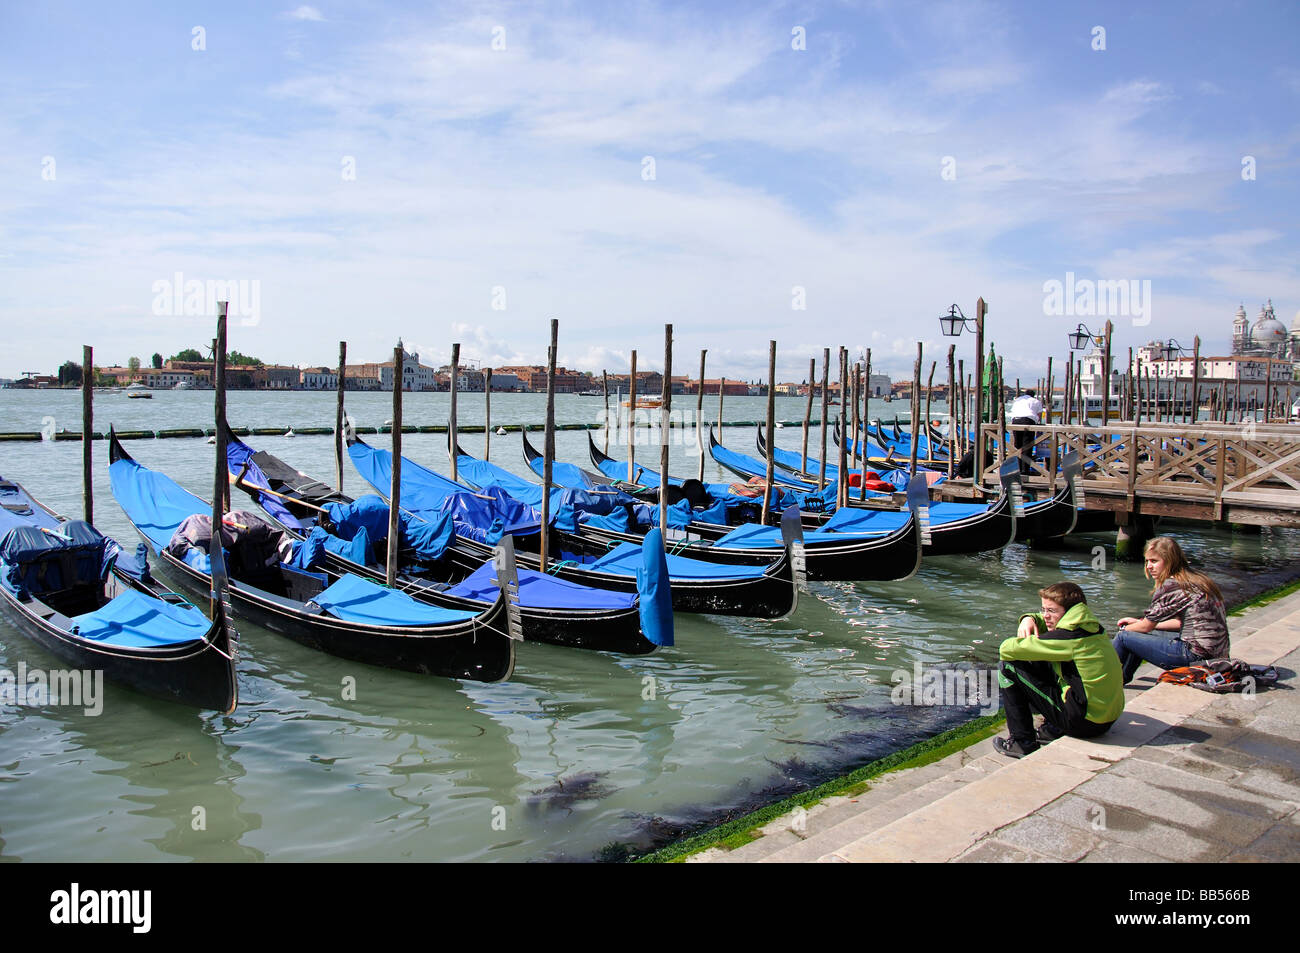 Gondolas on canalside moorings, Grand Canal, Venice, Venice Province, Veneto Region, Italy Stock Photo